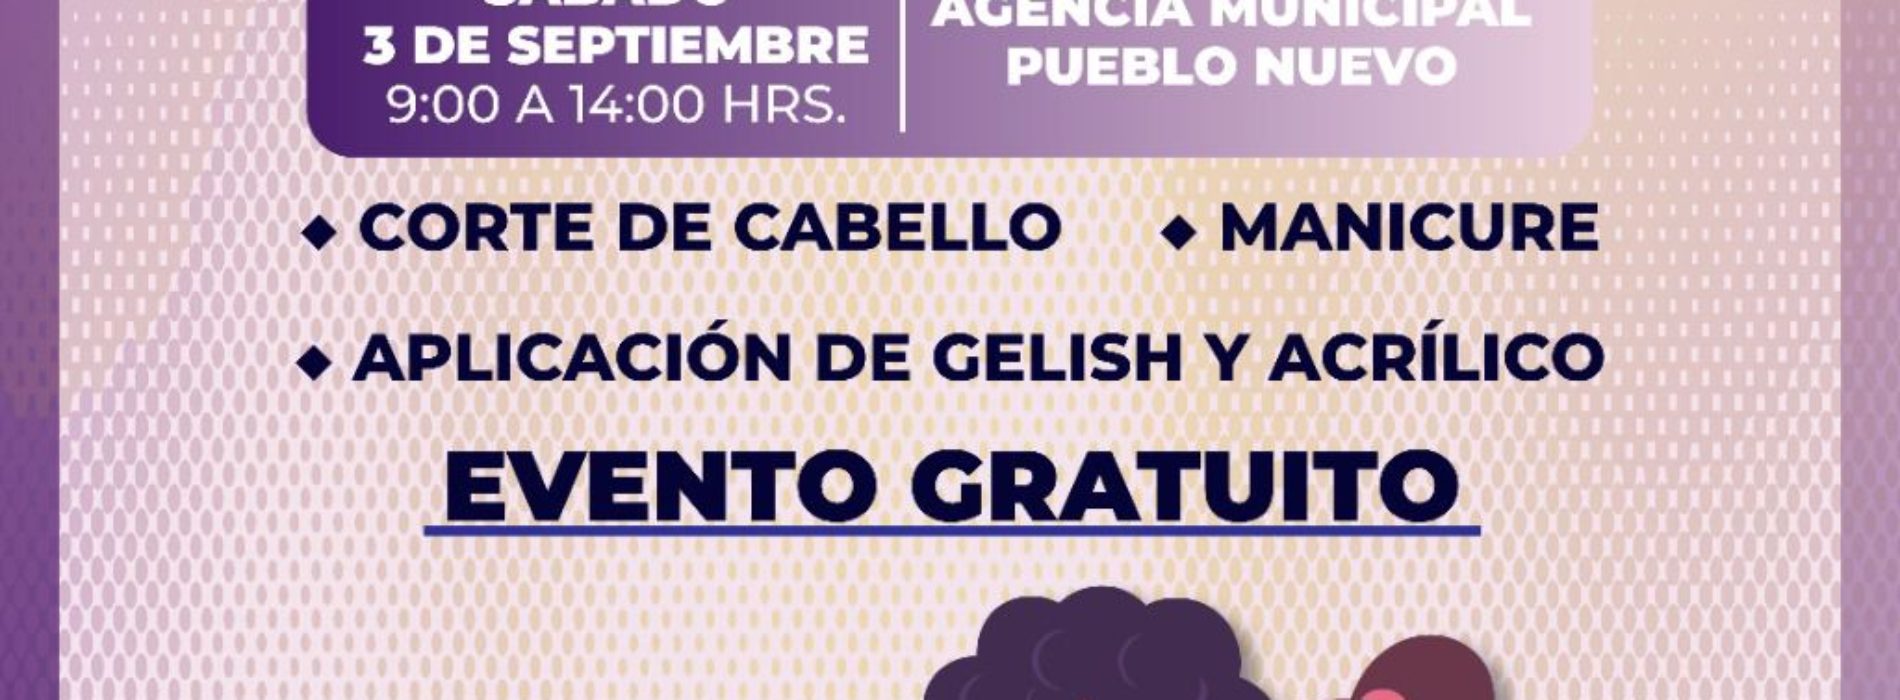 Invita Brigada Violeta y «New Beauty» a Jornada de Belleza en Pueblo Nuevo